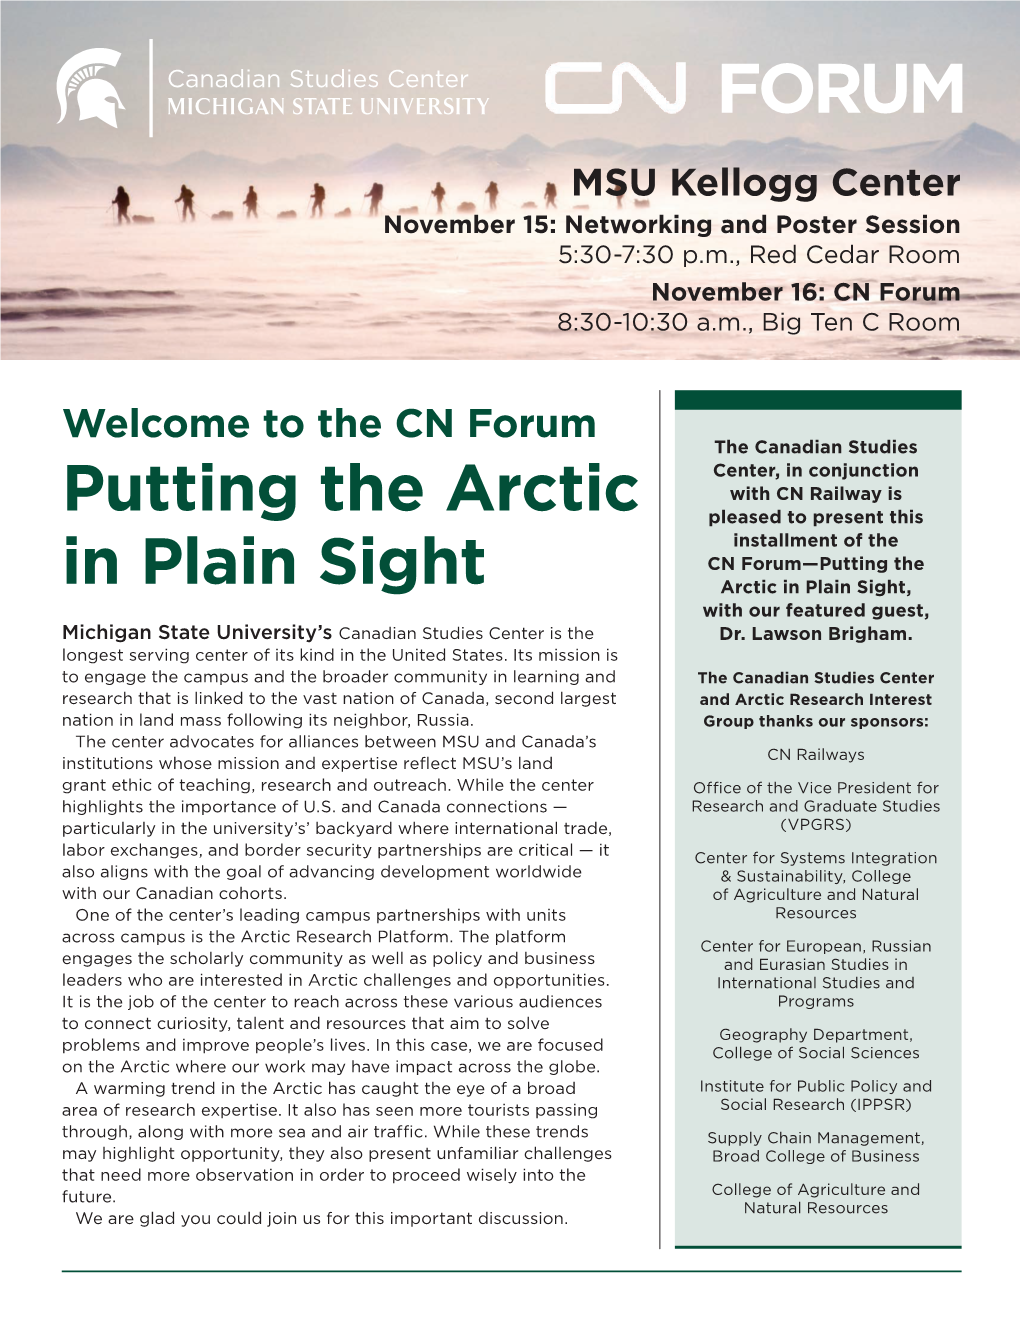 Putting the Arctic in Plain Sight Agenda